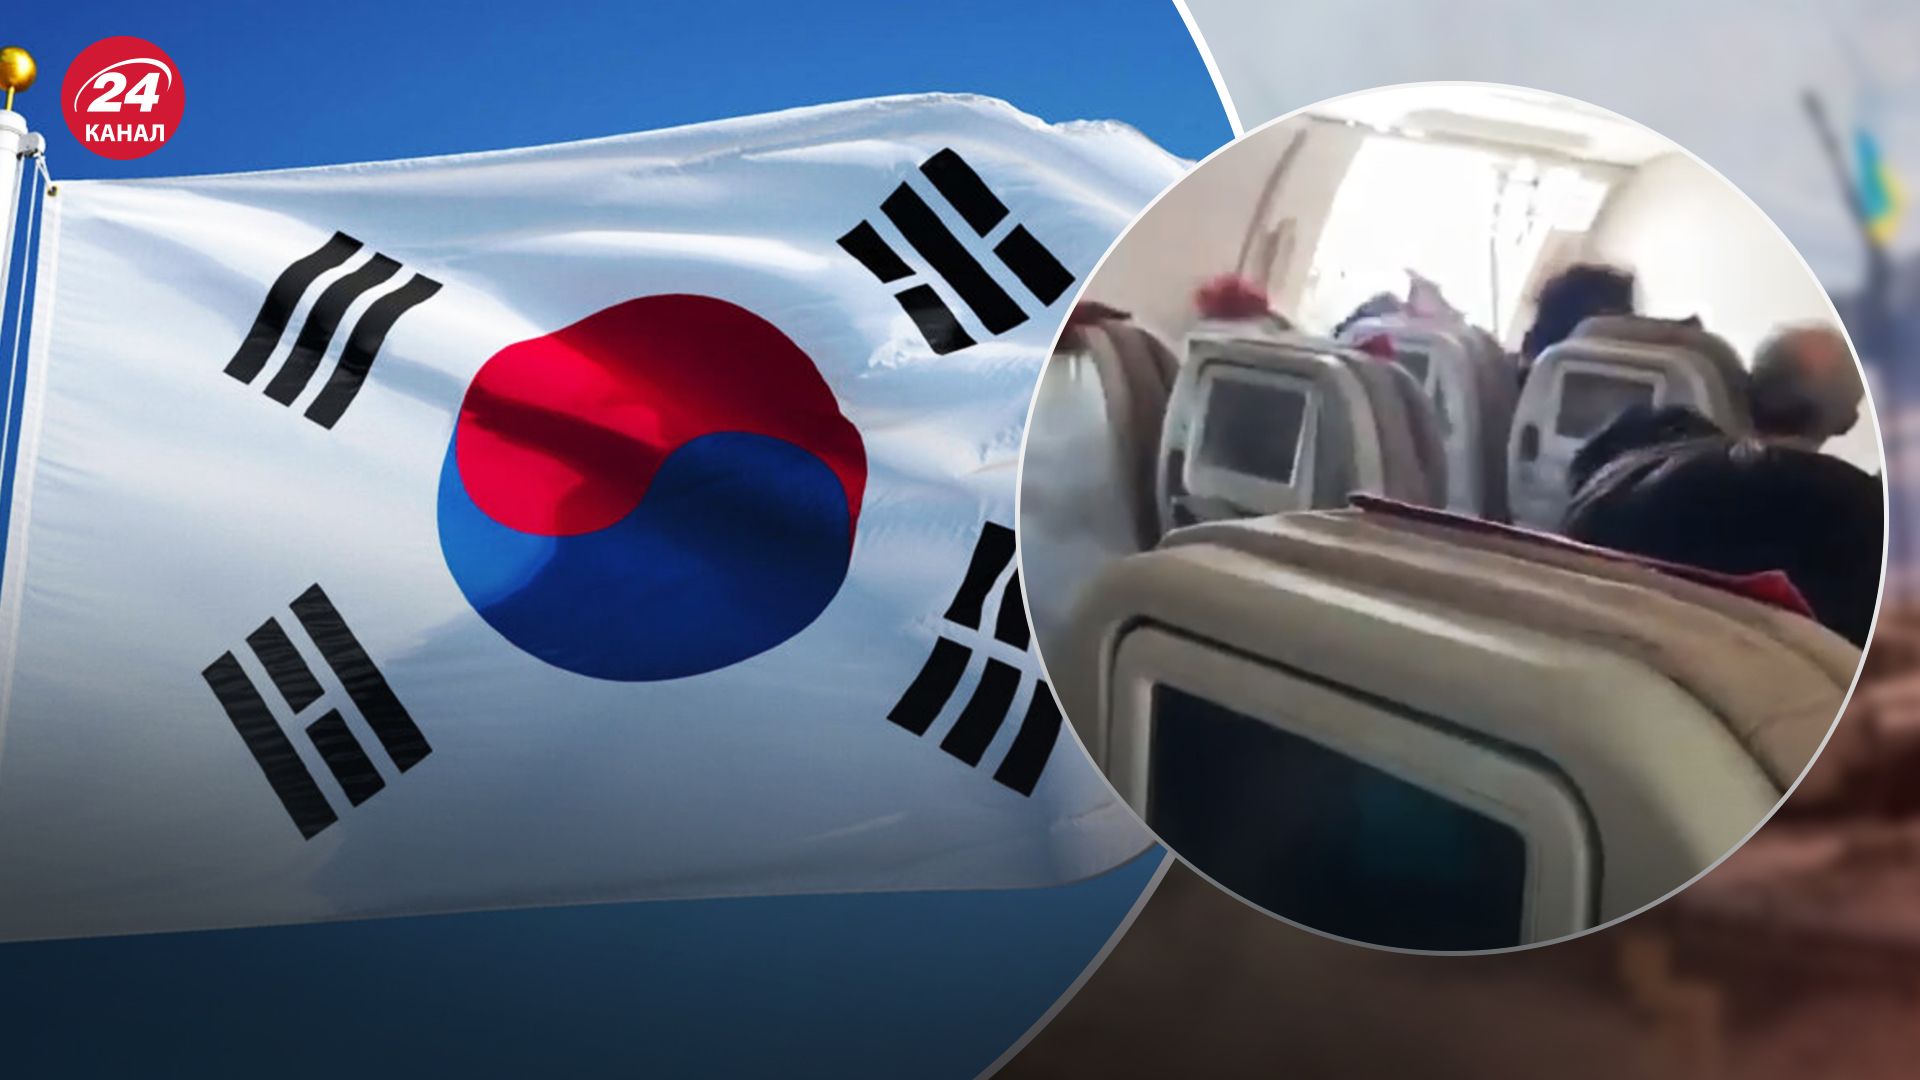 В Южной Корее пассажир открыл аварийную дверь самолета и спровоцировал инцидент